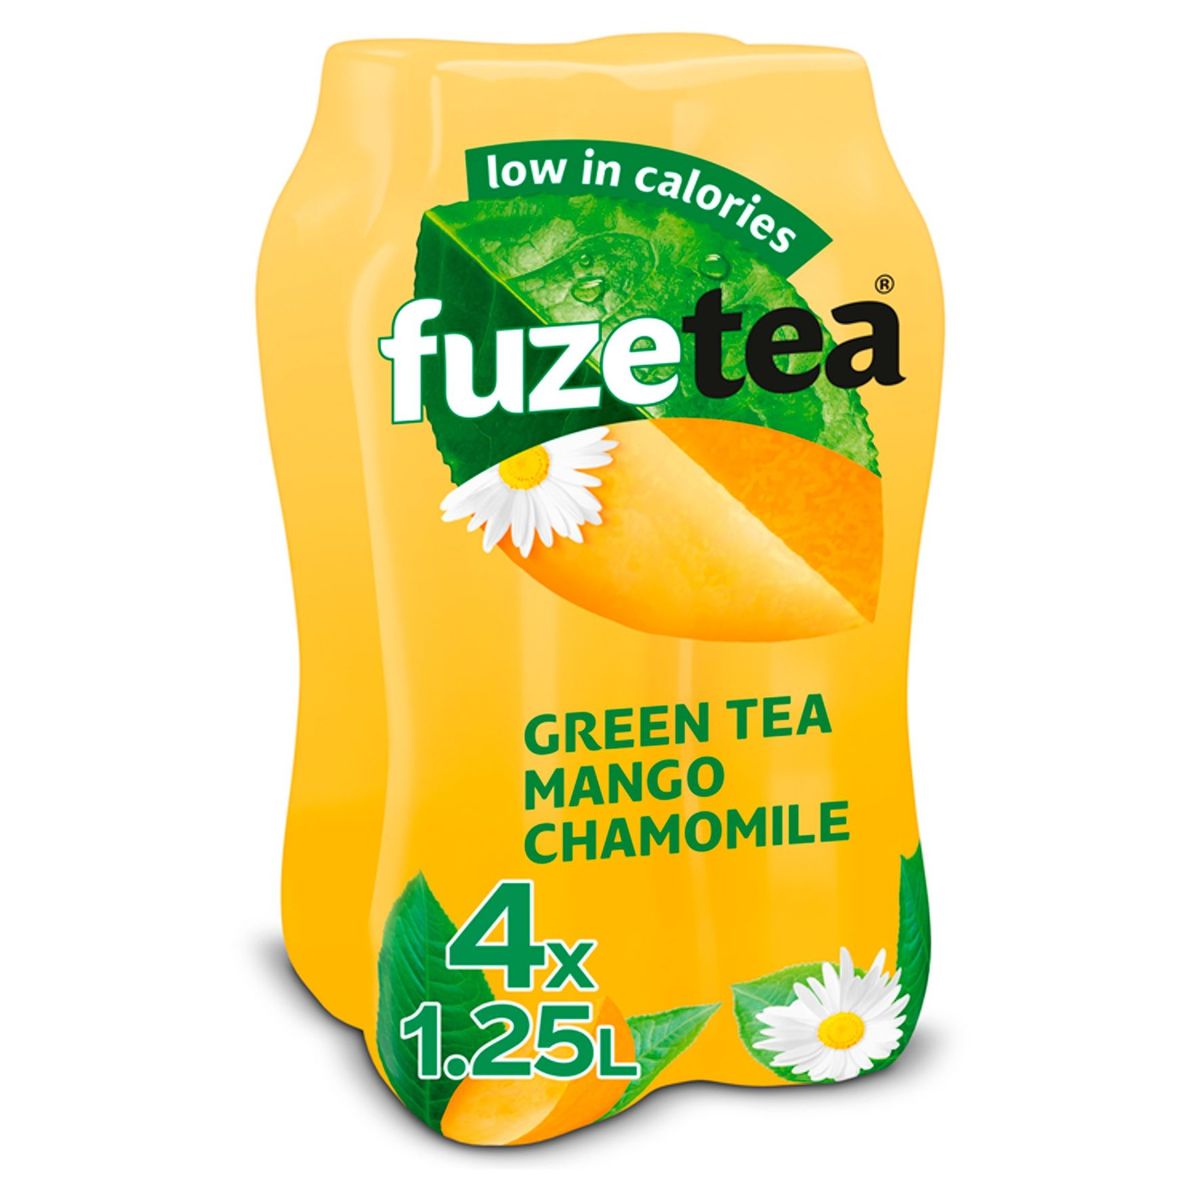 Fuze Tea Green Tea Mango Chamomile Iced Tea 4 x 1.25 L